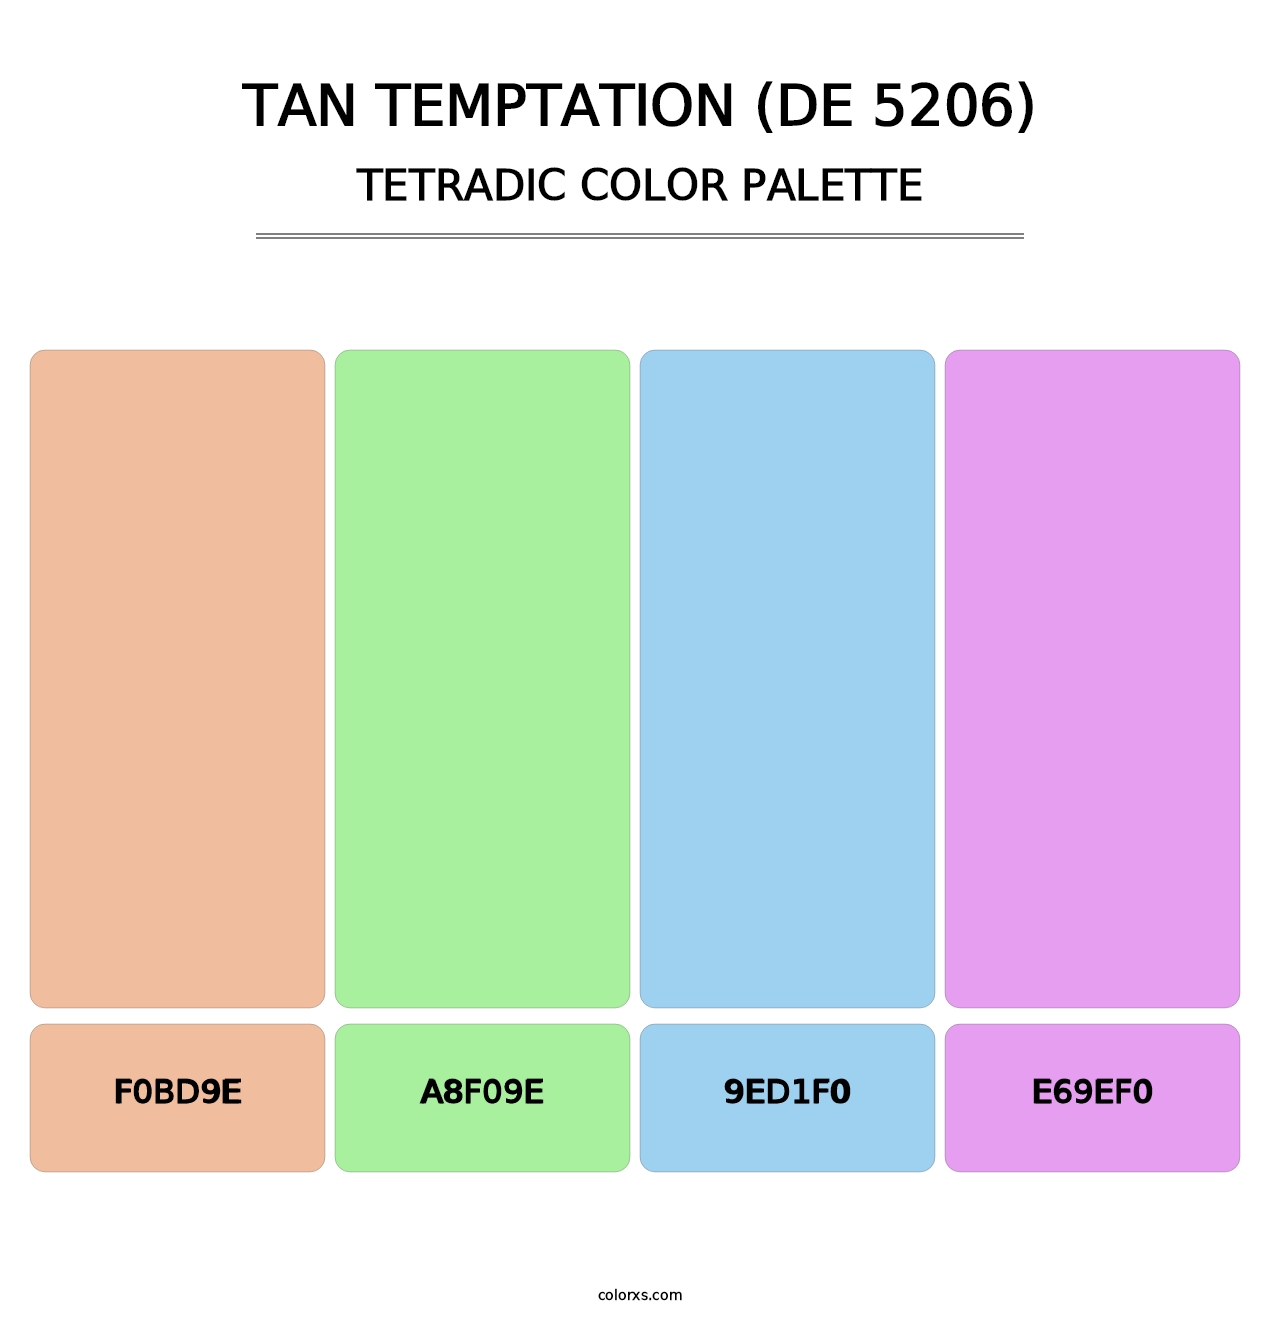 Tan Temptation (DE 5206) - Tetradic Color Palette